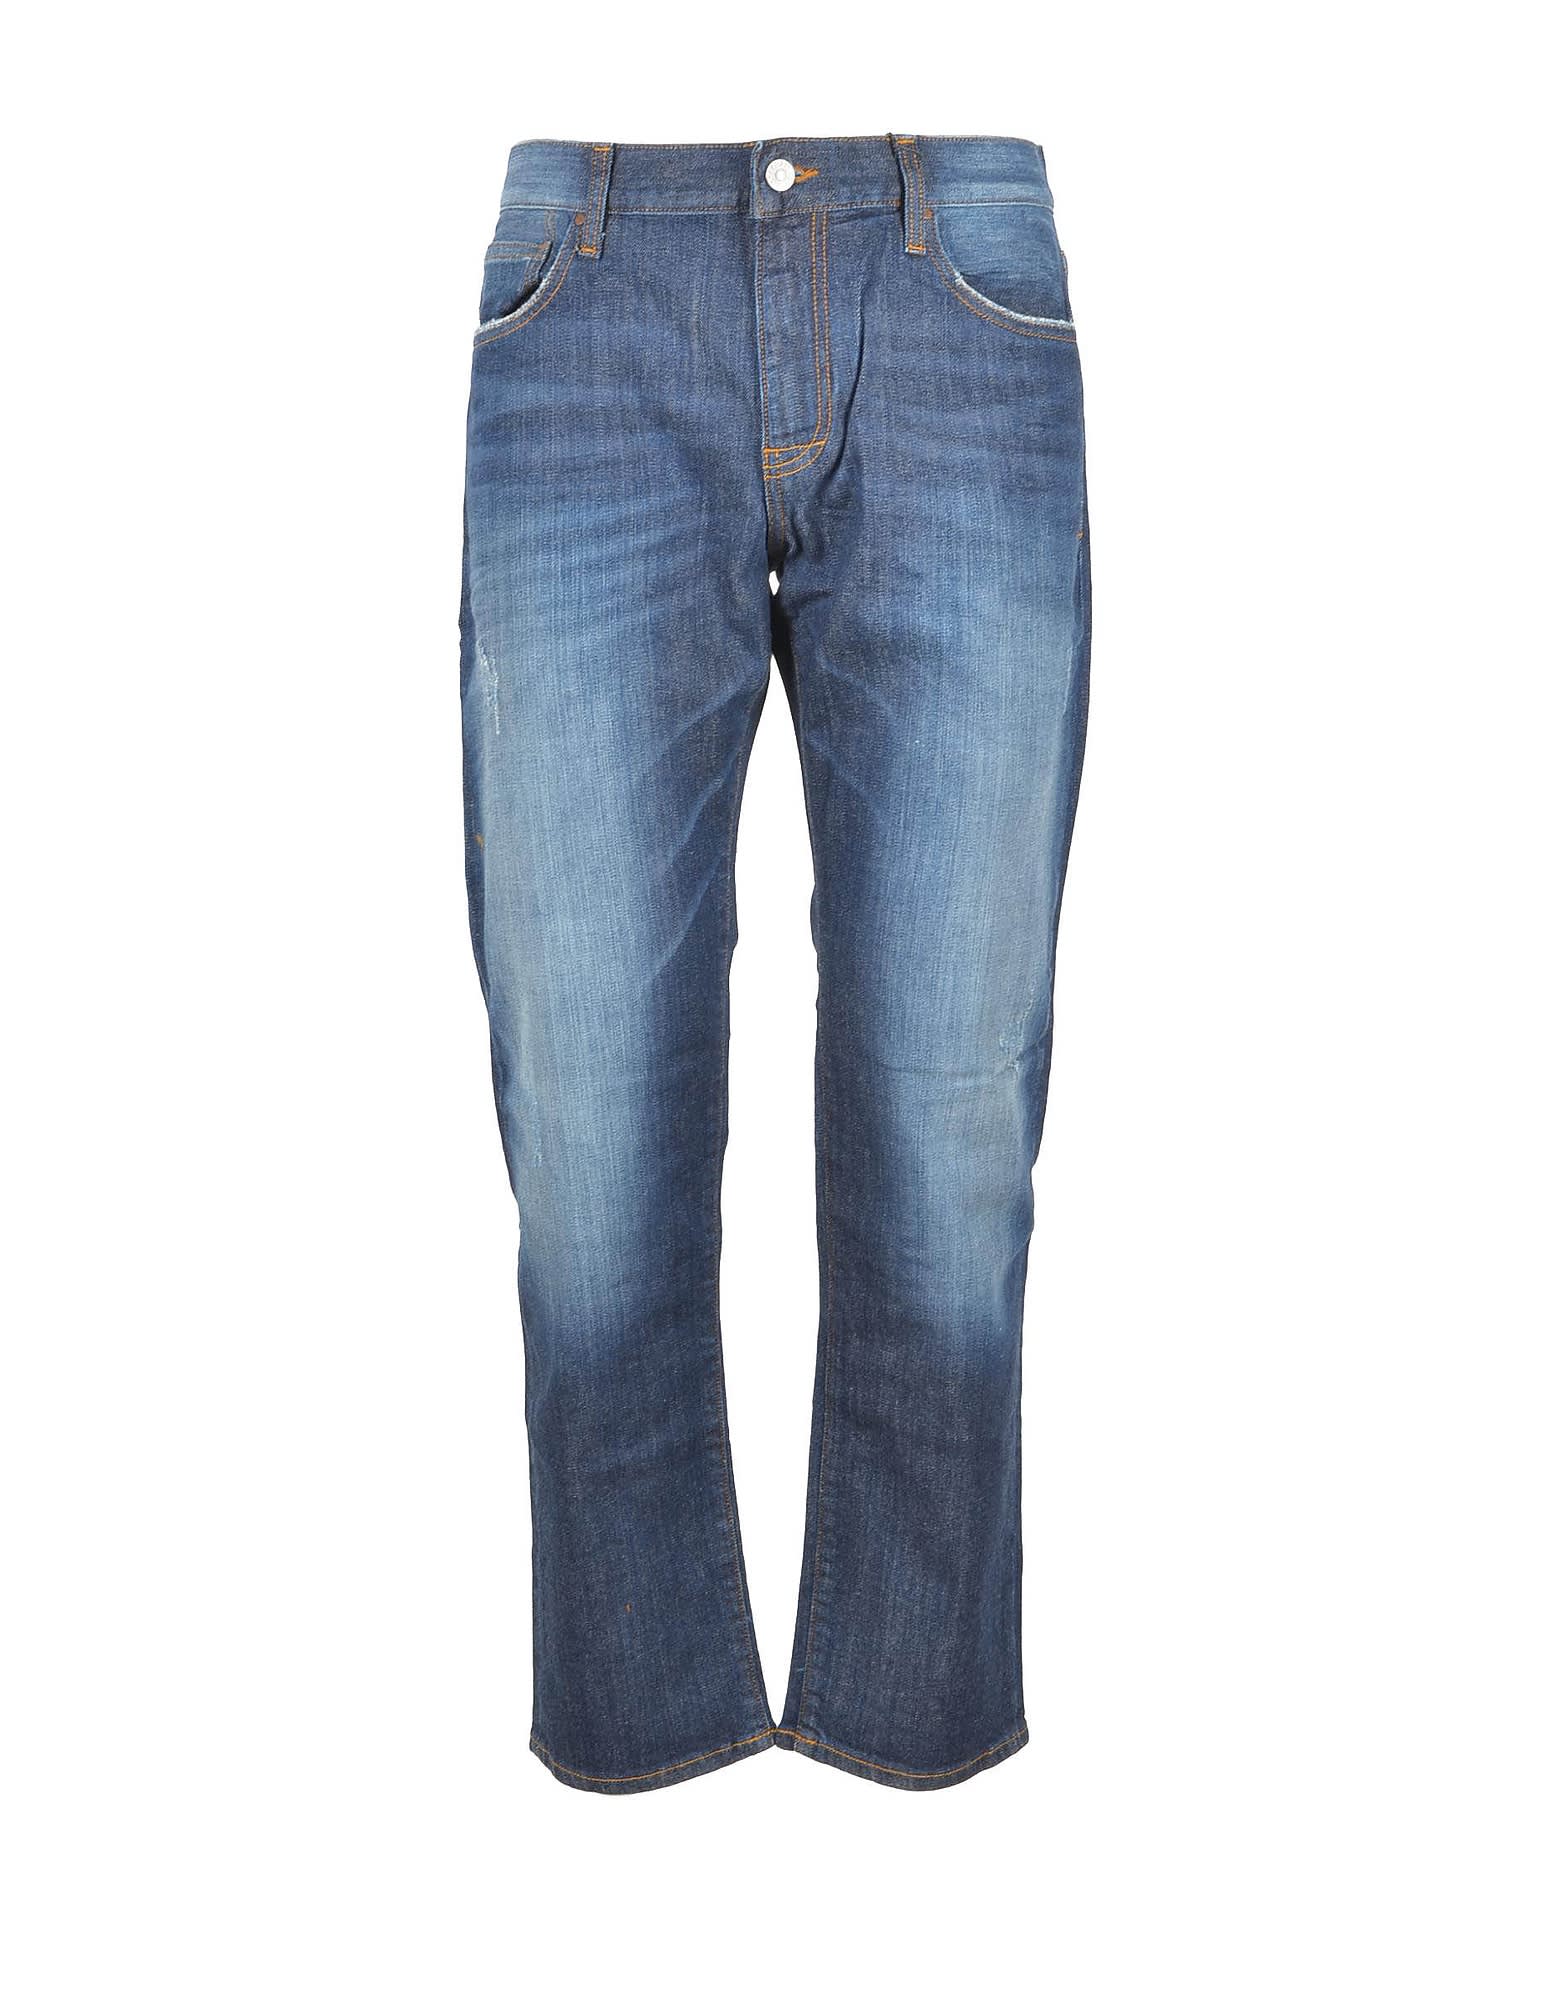 Armani Collezioni Mens Blue Jeans